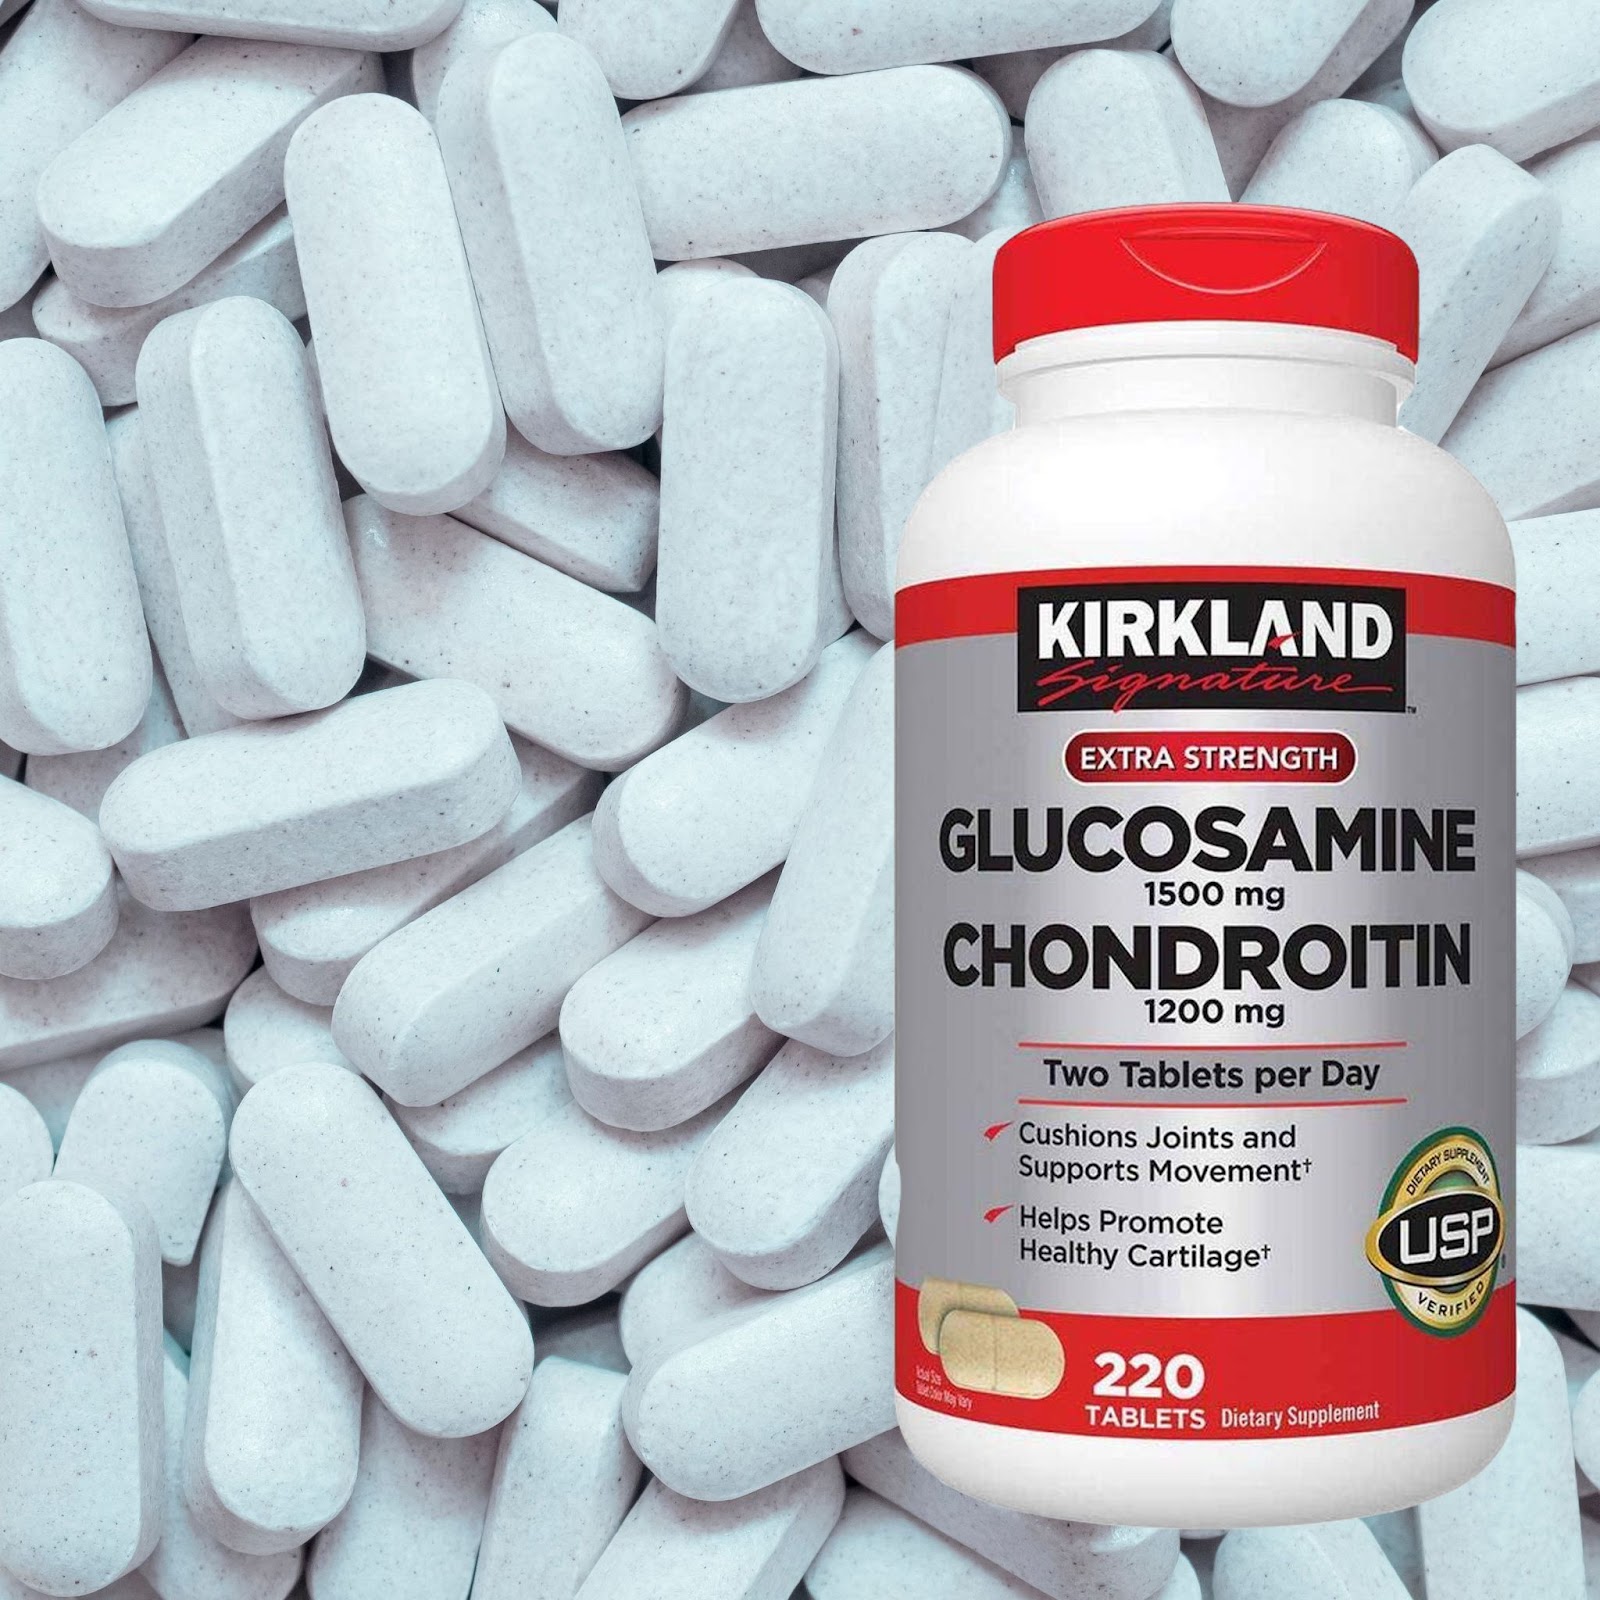 Chondroitin thường được phối hợp với glucosamine để nâng cao hiệu quả hỗ trợ điều trị bệnh xương khớp